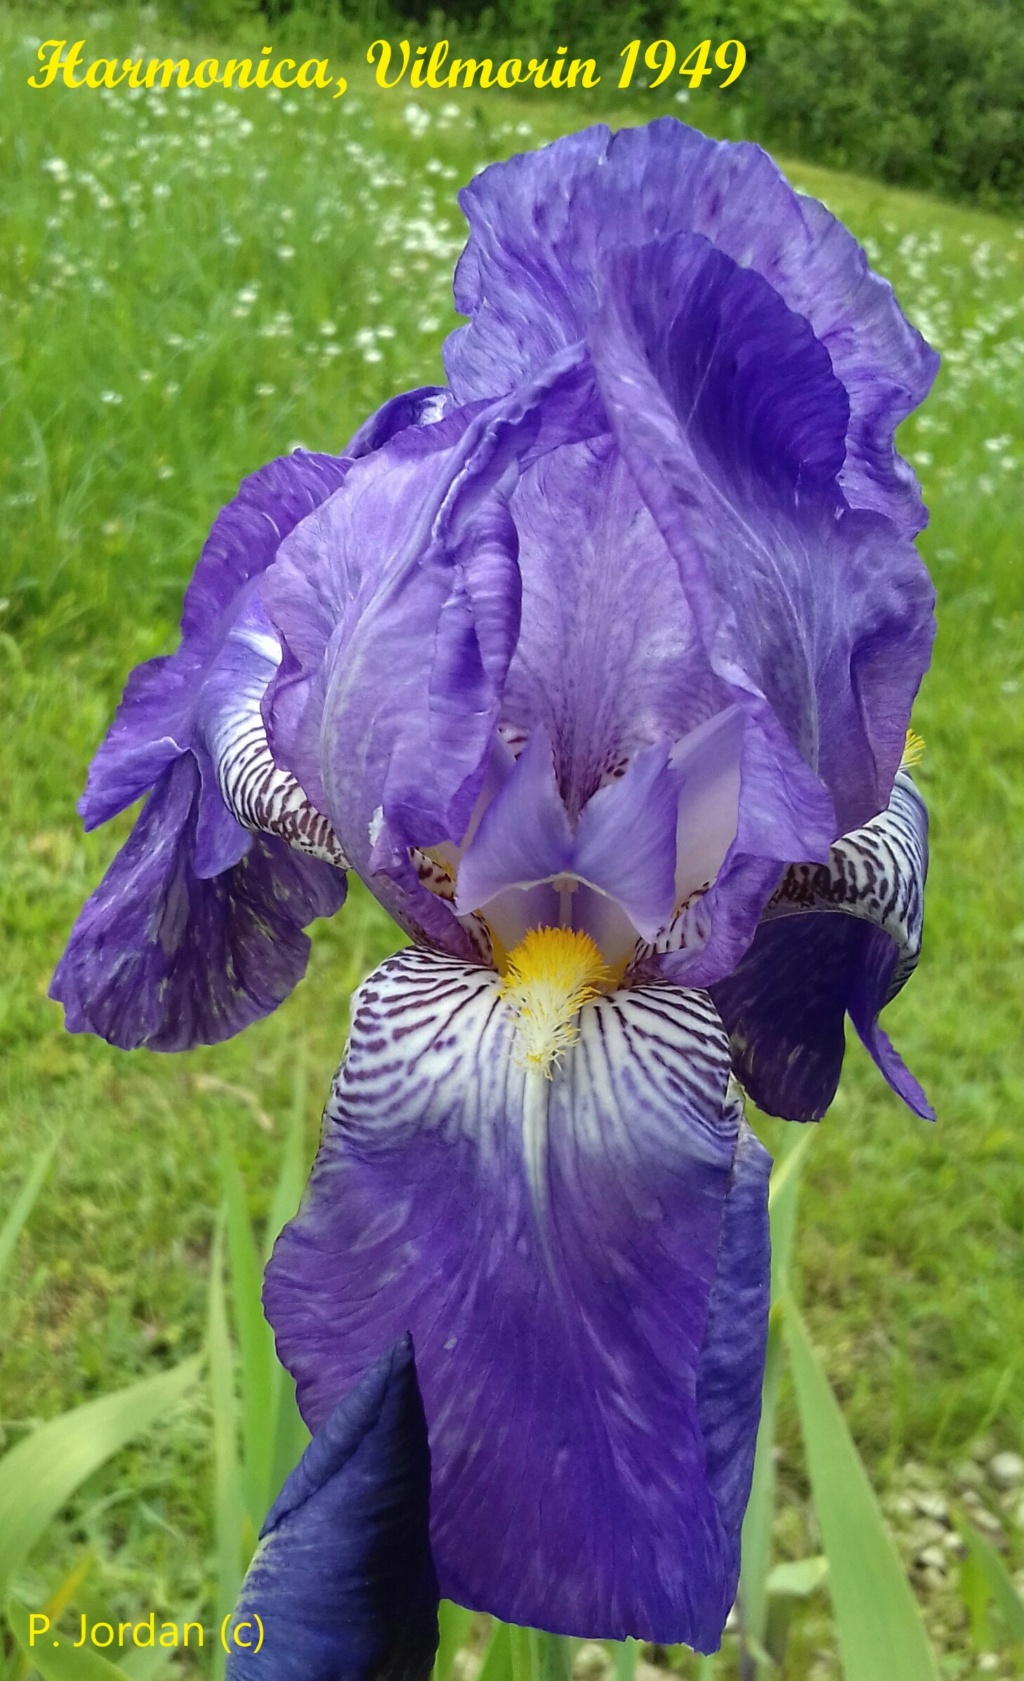 Les iris inédits : diploïdes horticoles français  Harmon10